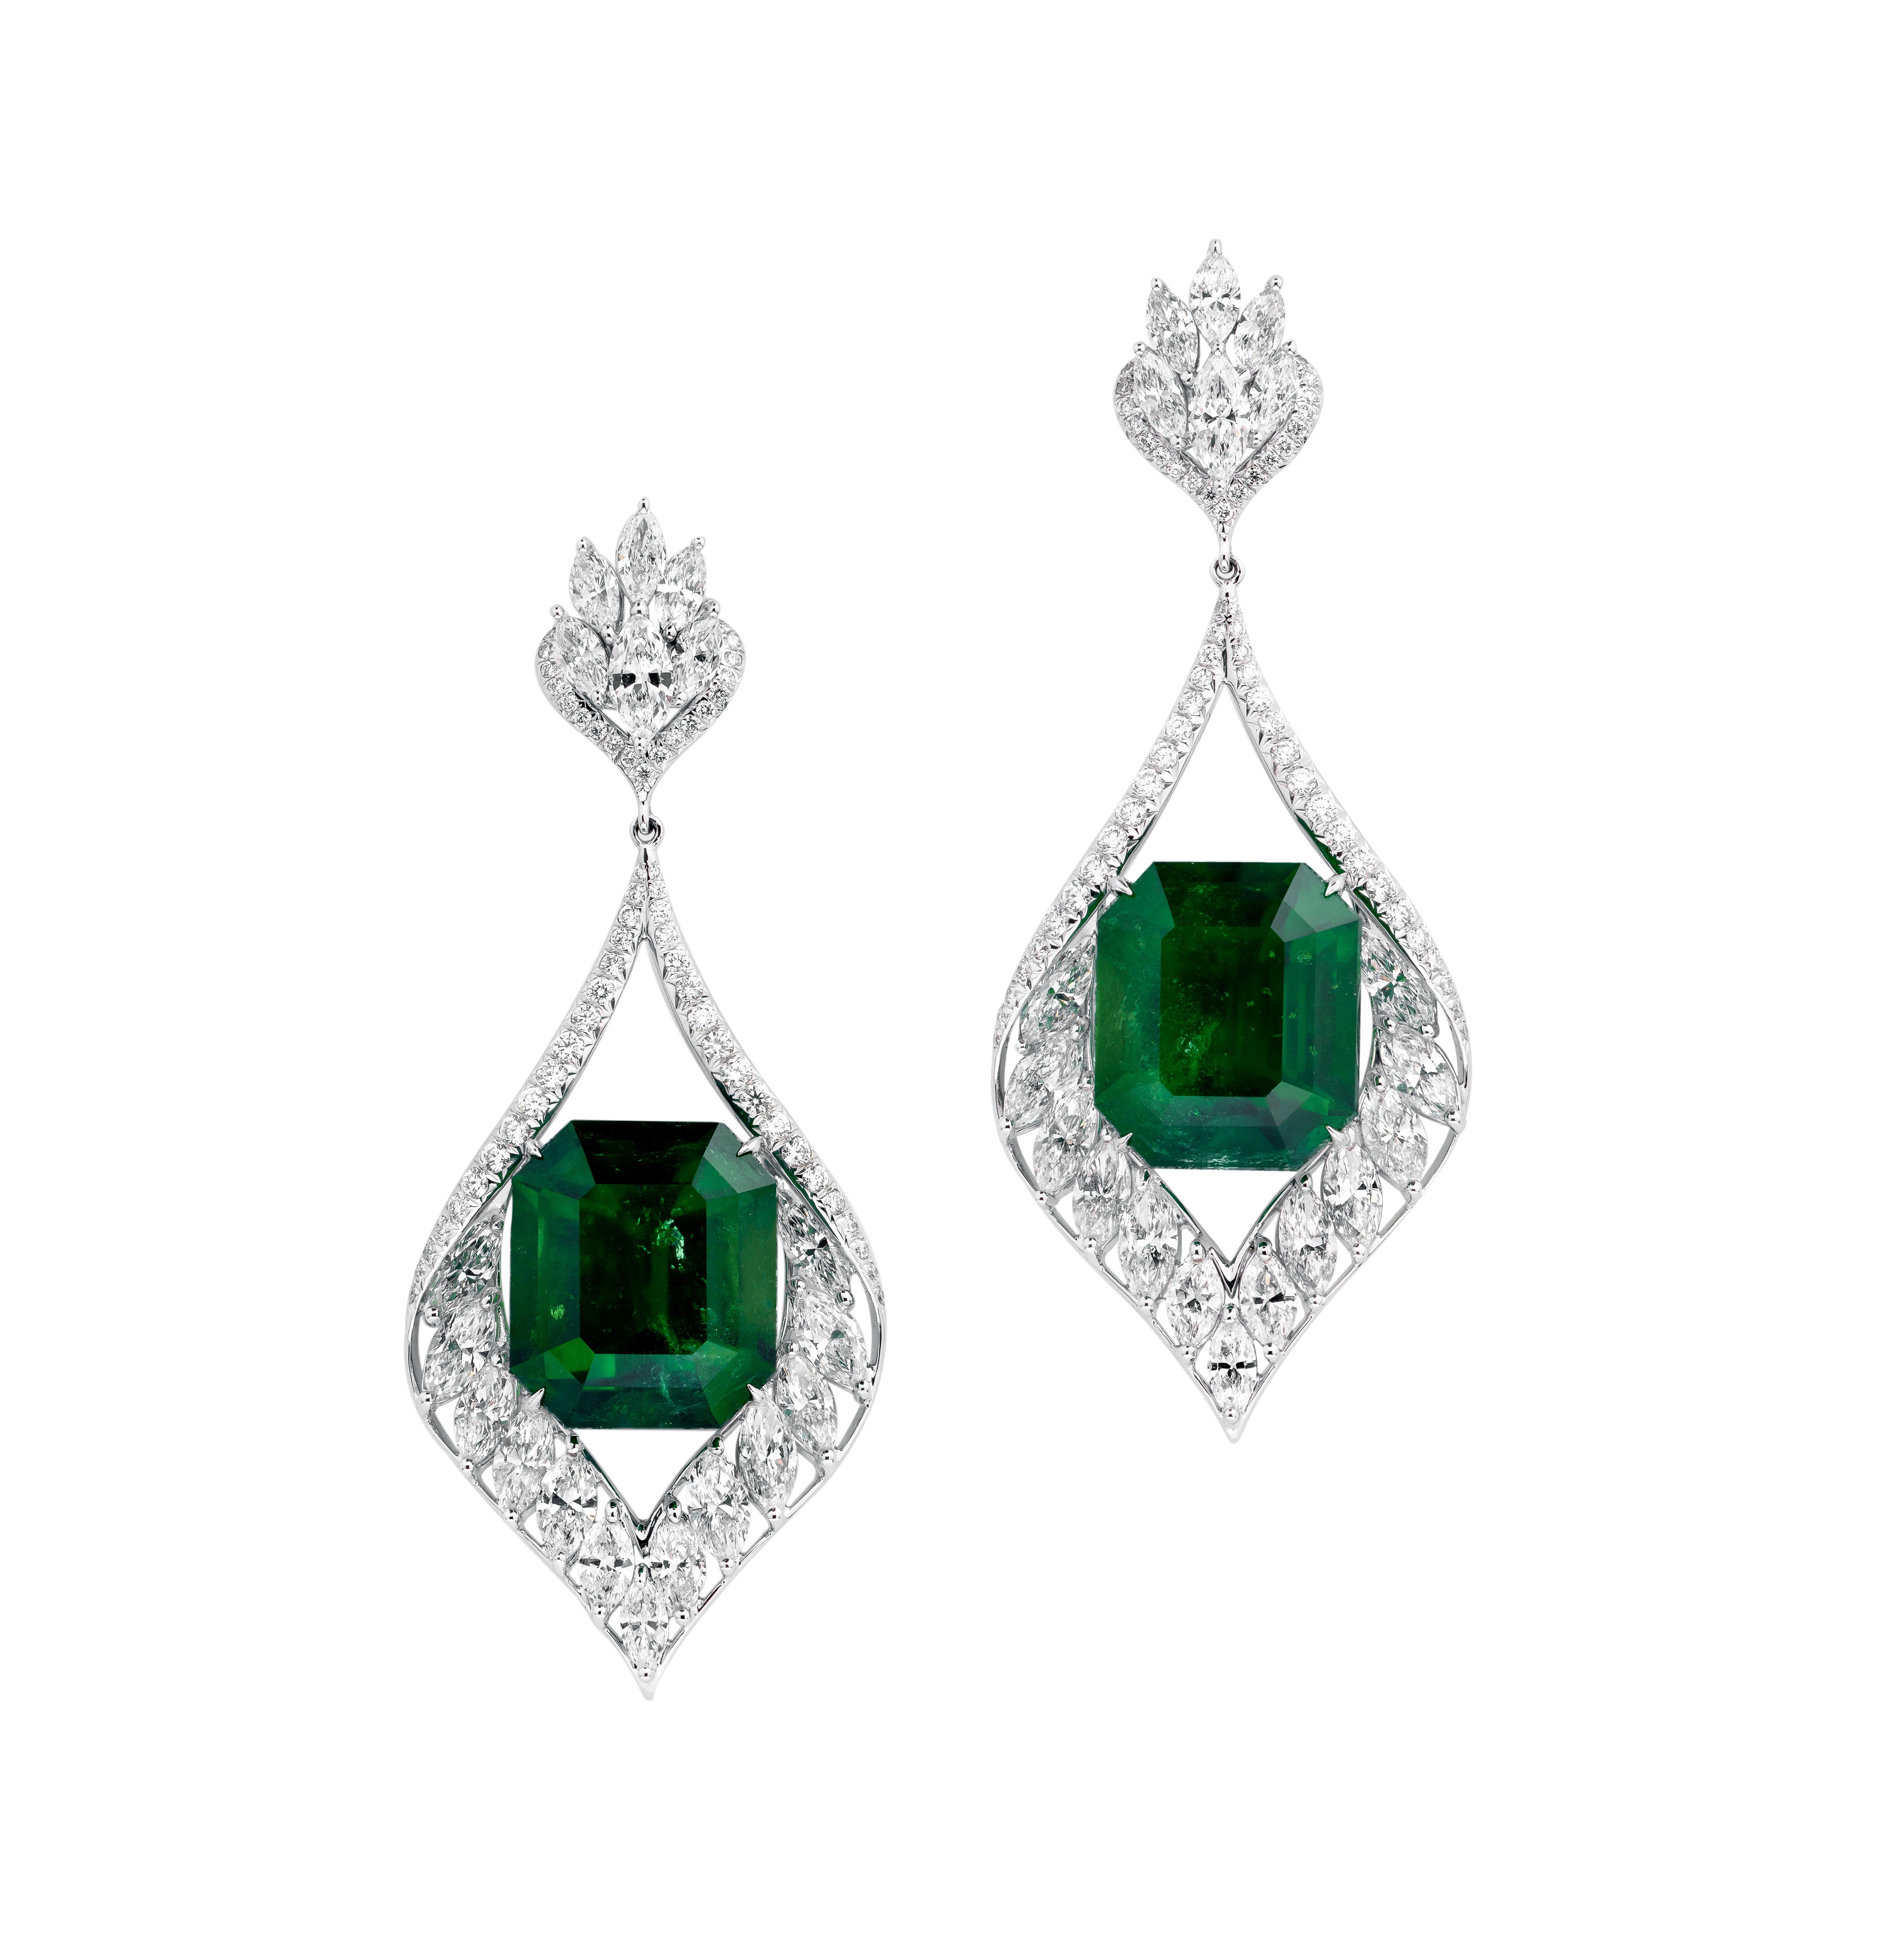 Octagon Cut Gubelin Certified 42.62 Carat Colombian Emerald Diamond Earrings in 18K Gold For Sale